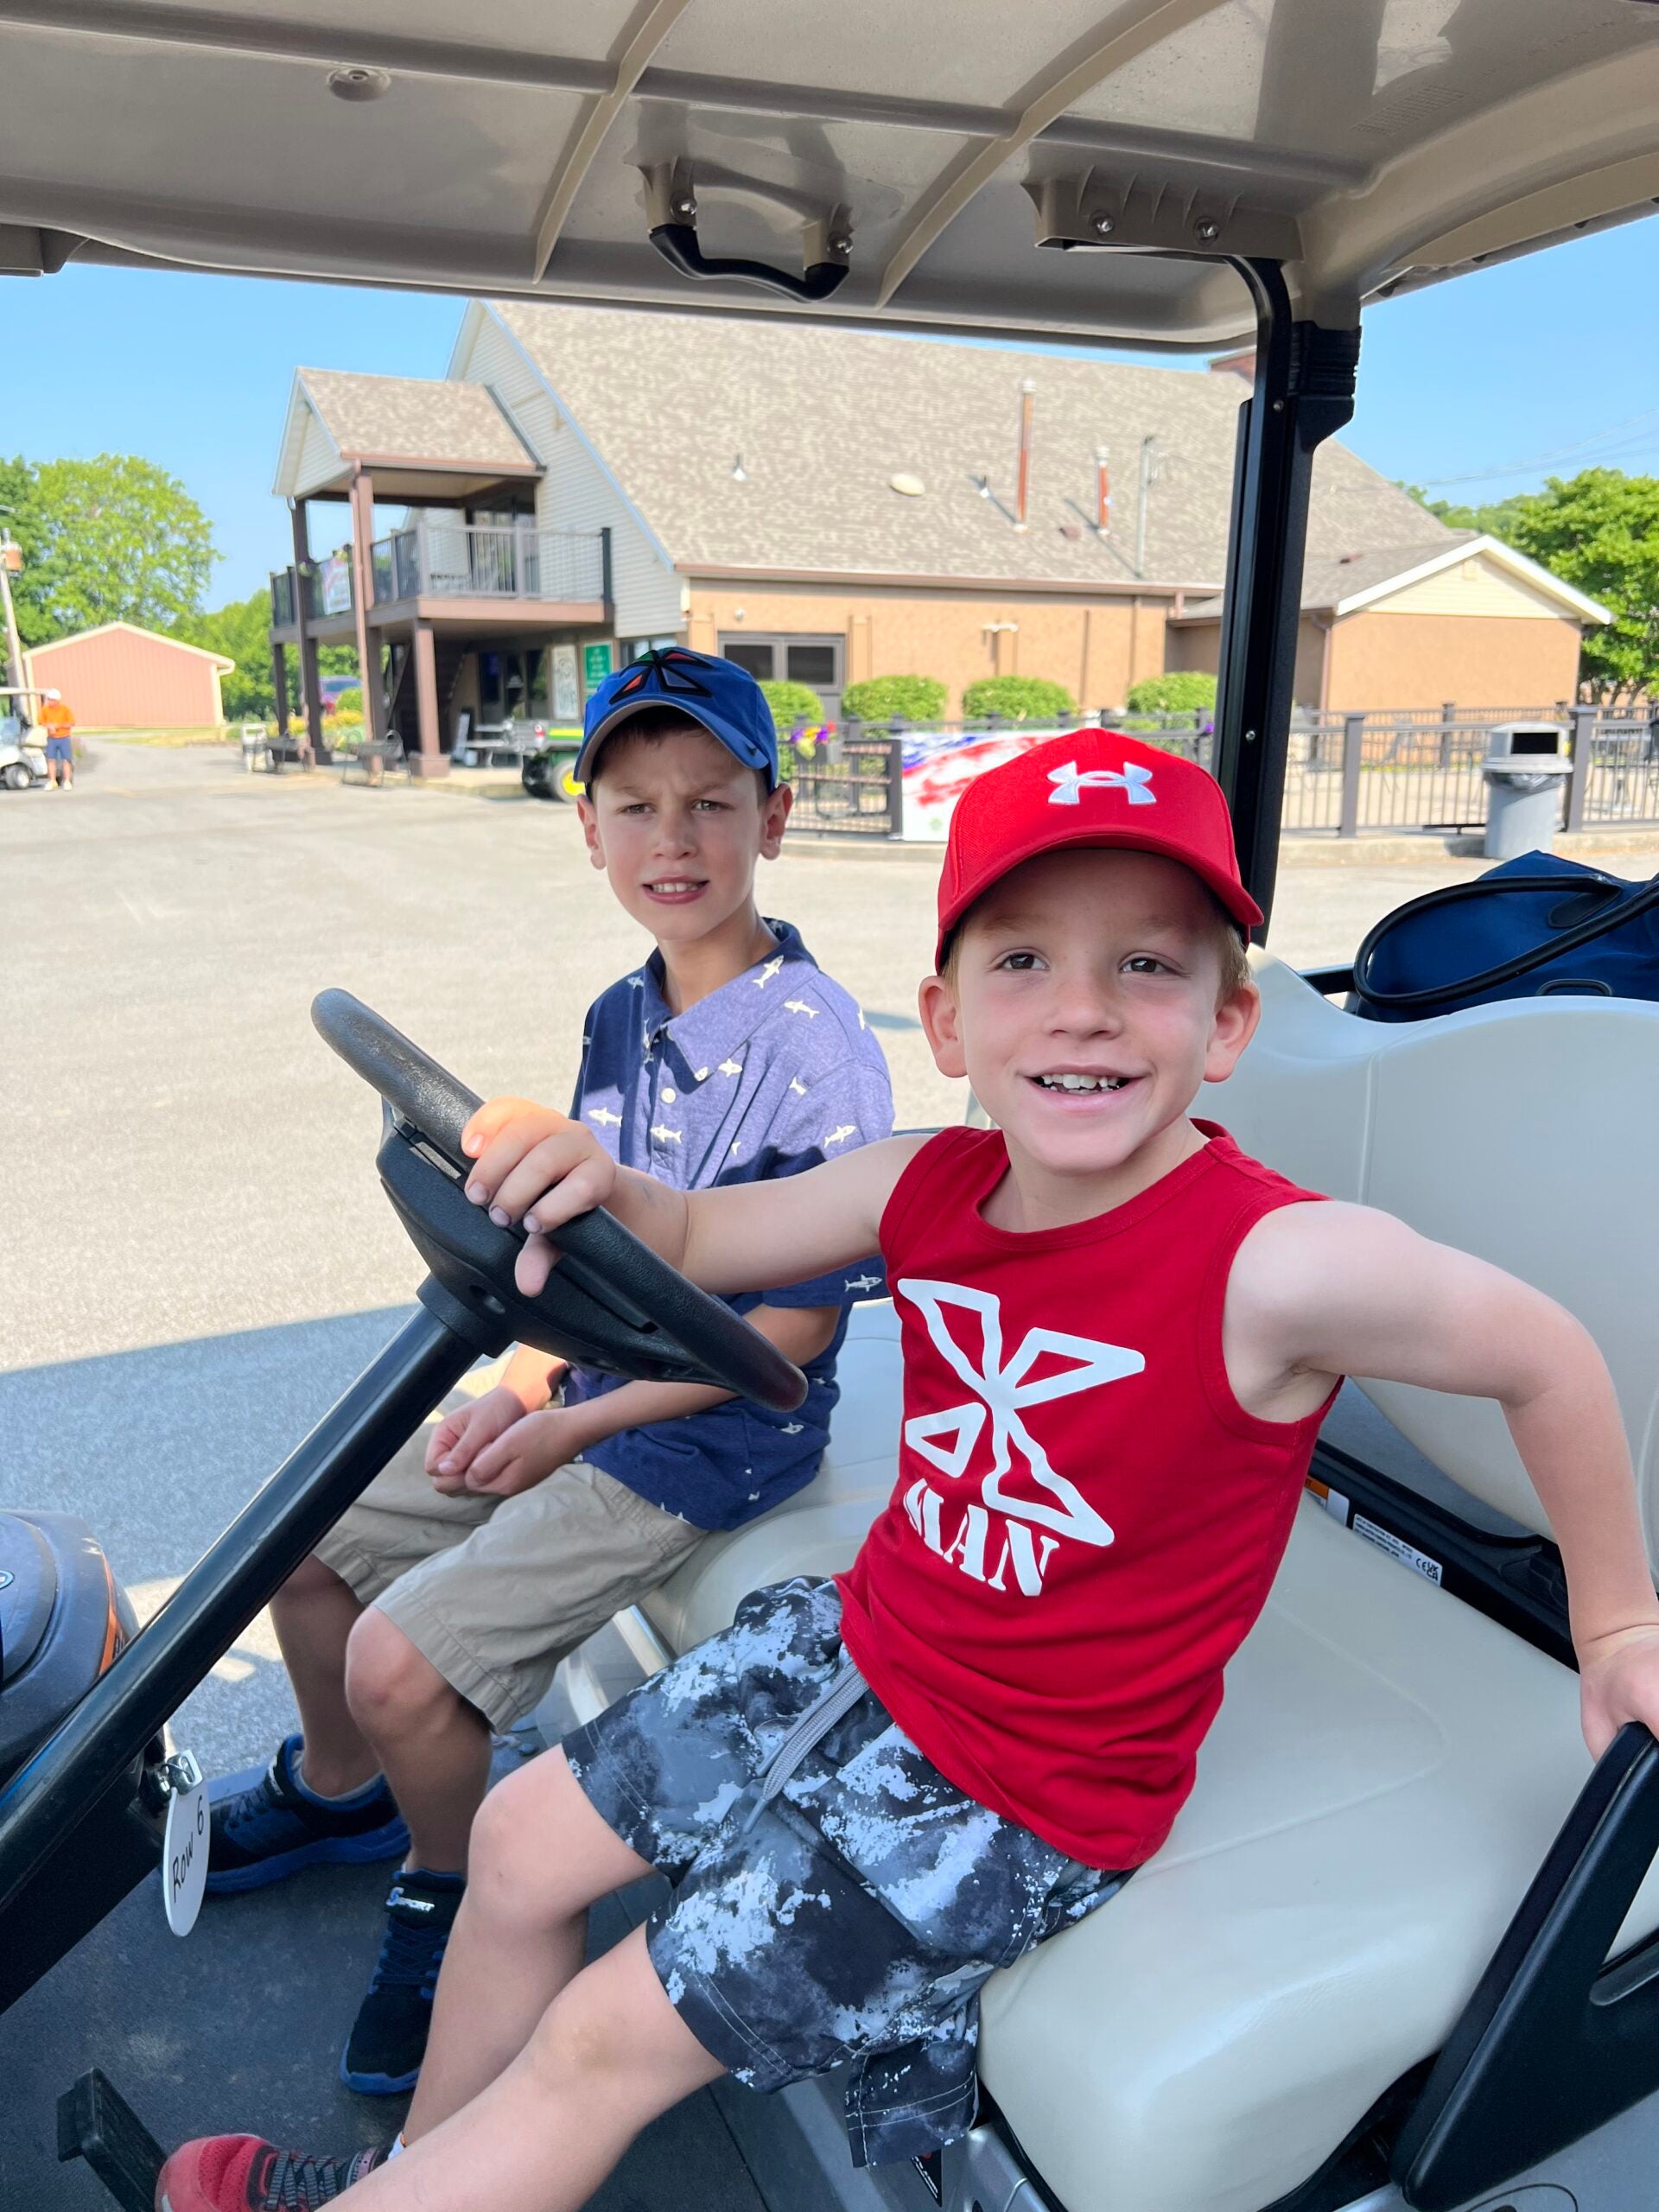 Kids driving the golf cart